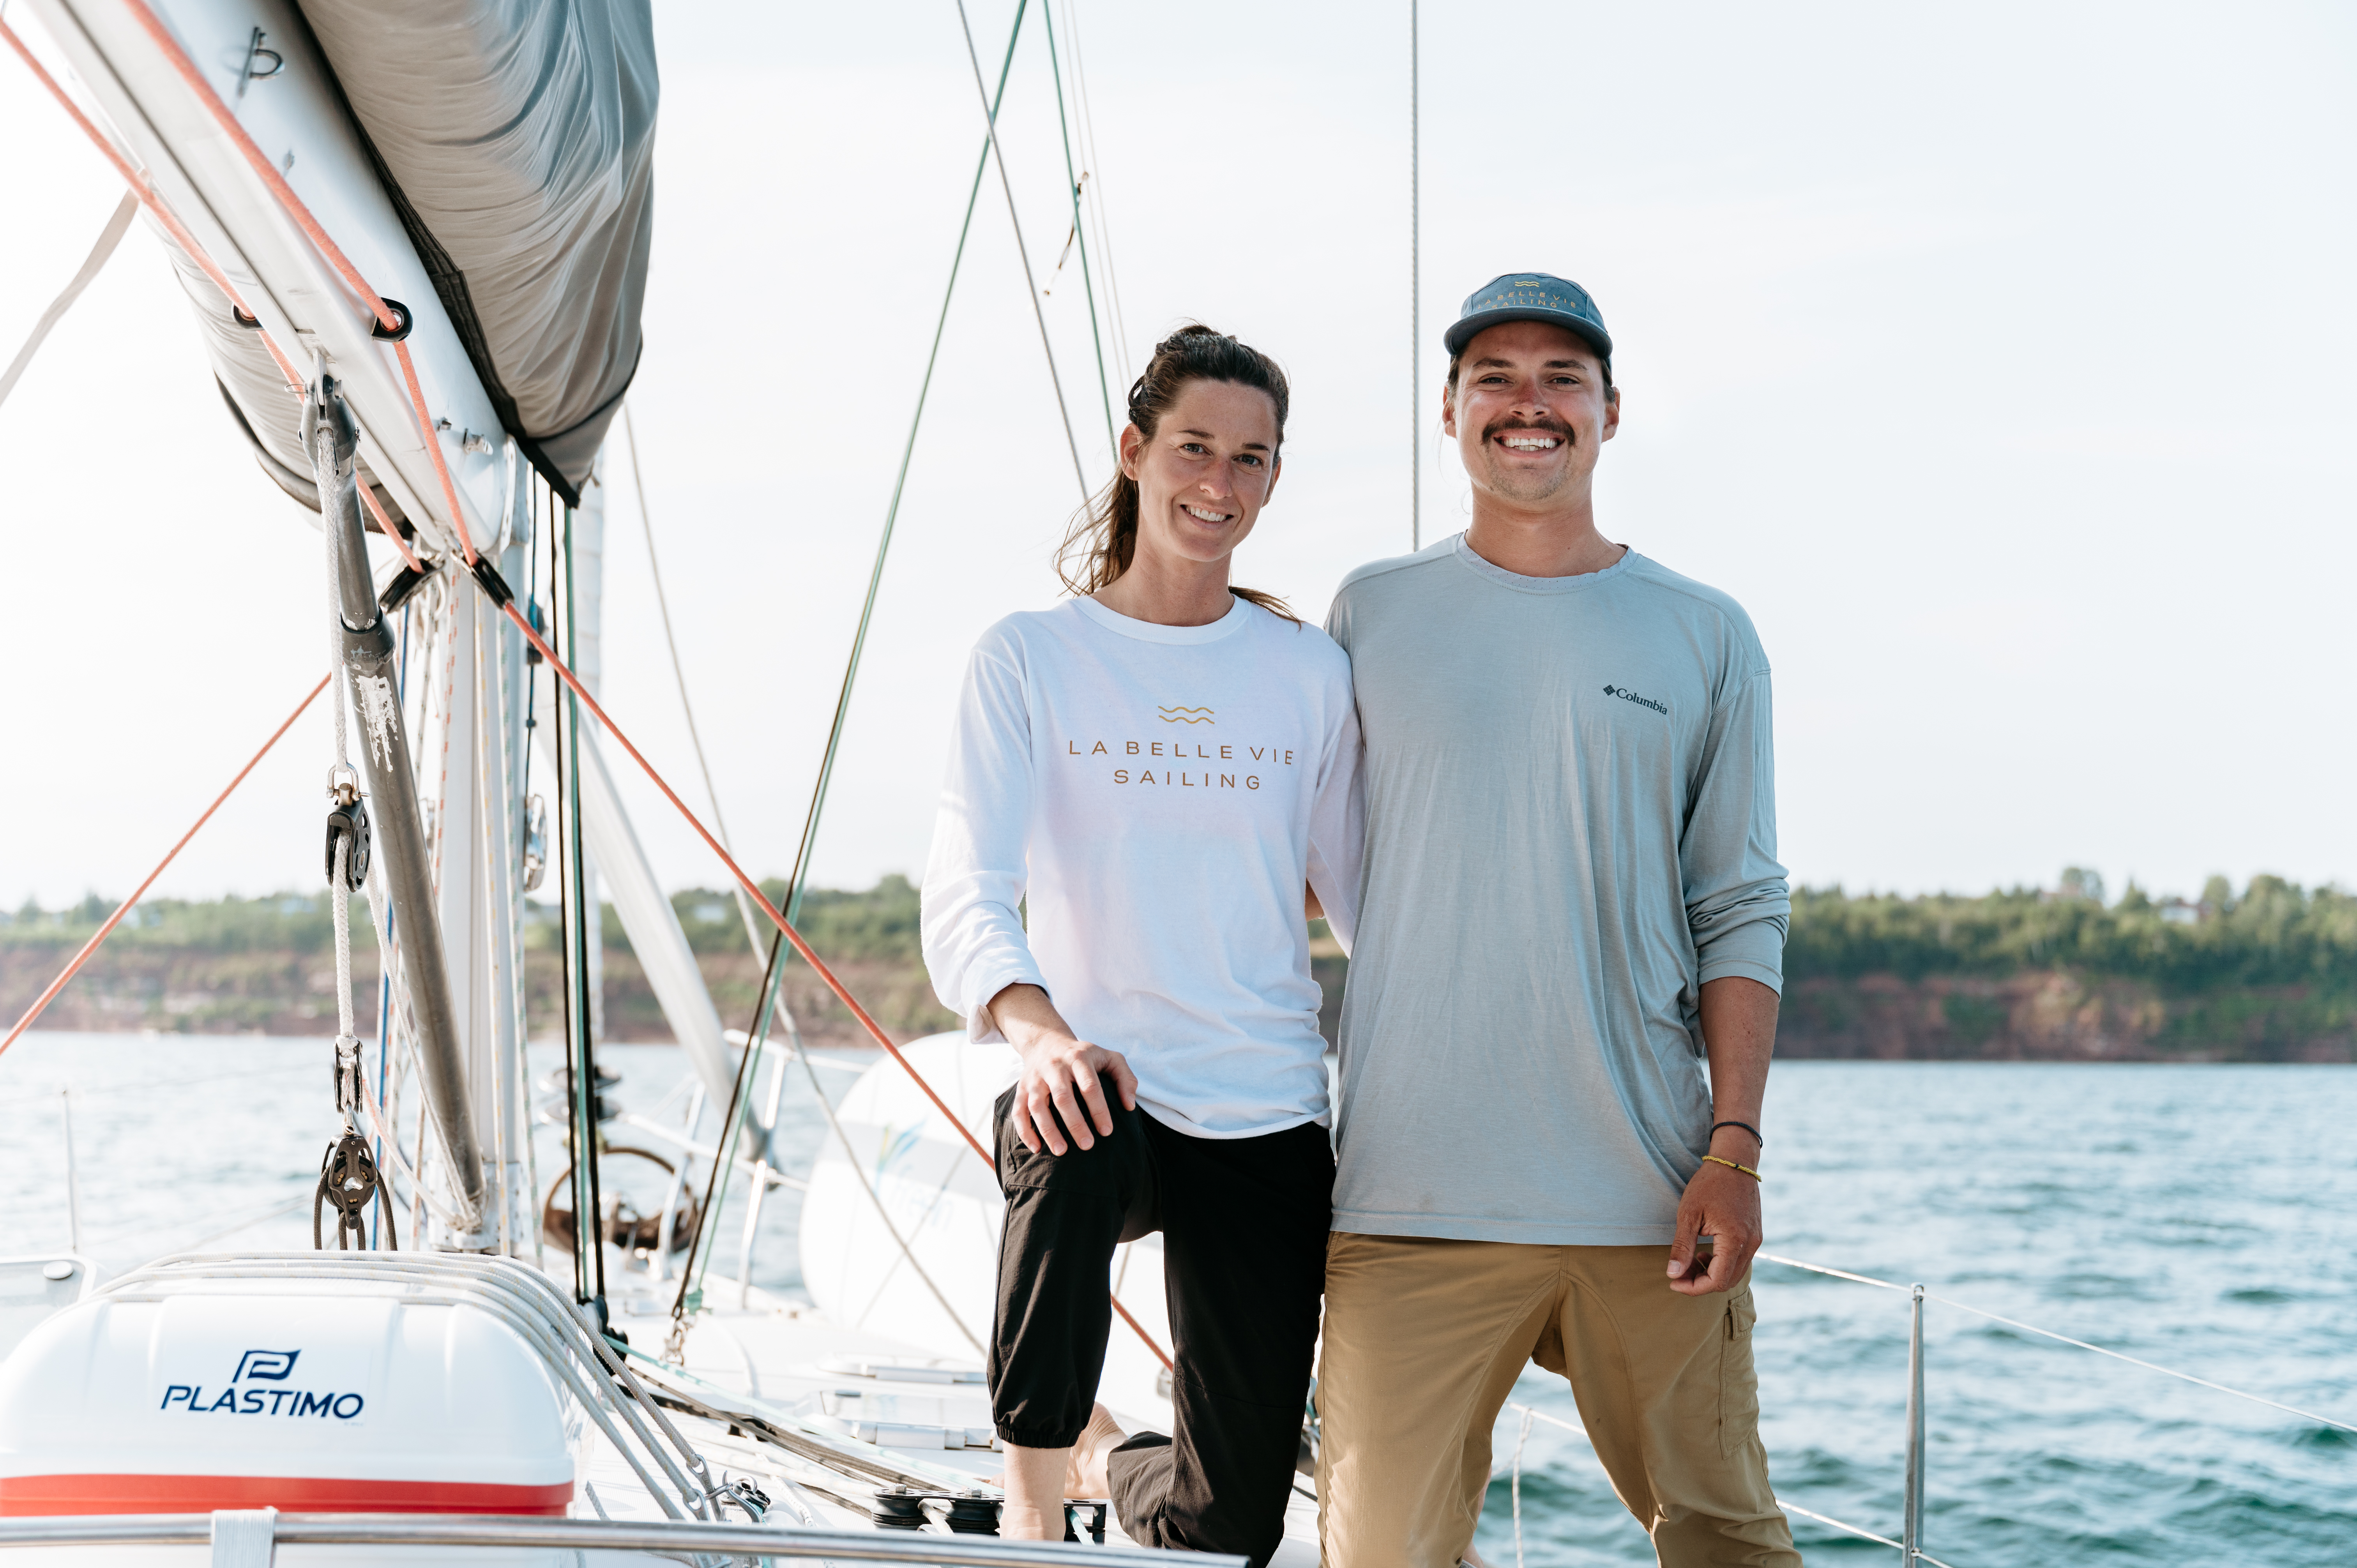 La belle vie sailing – Portrait d’entreprise